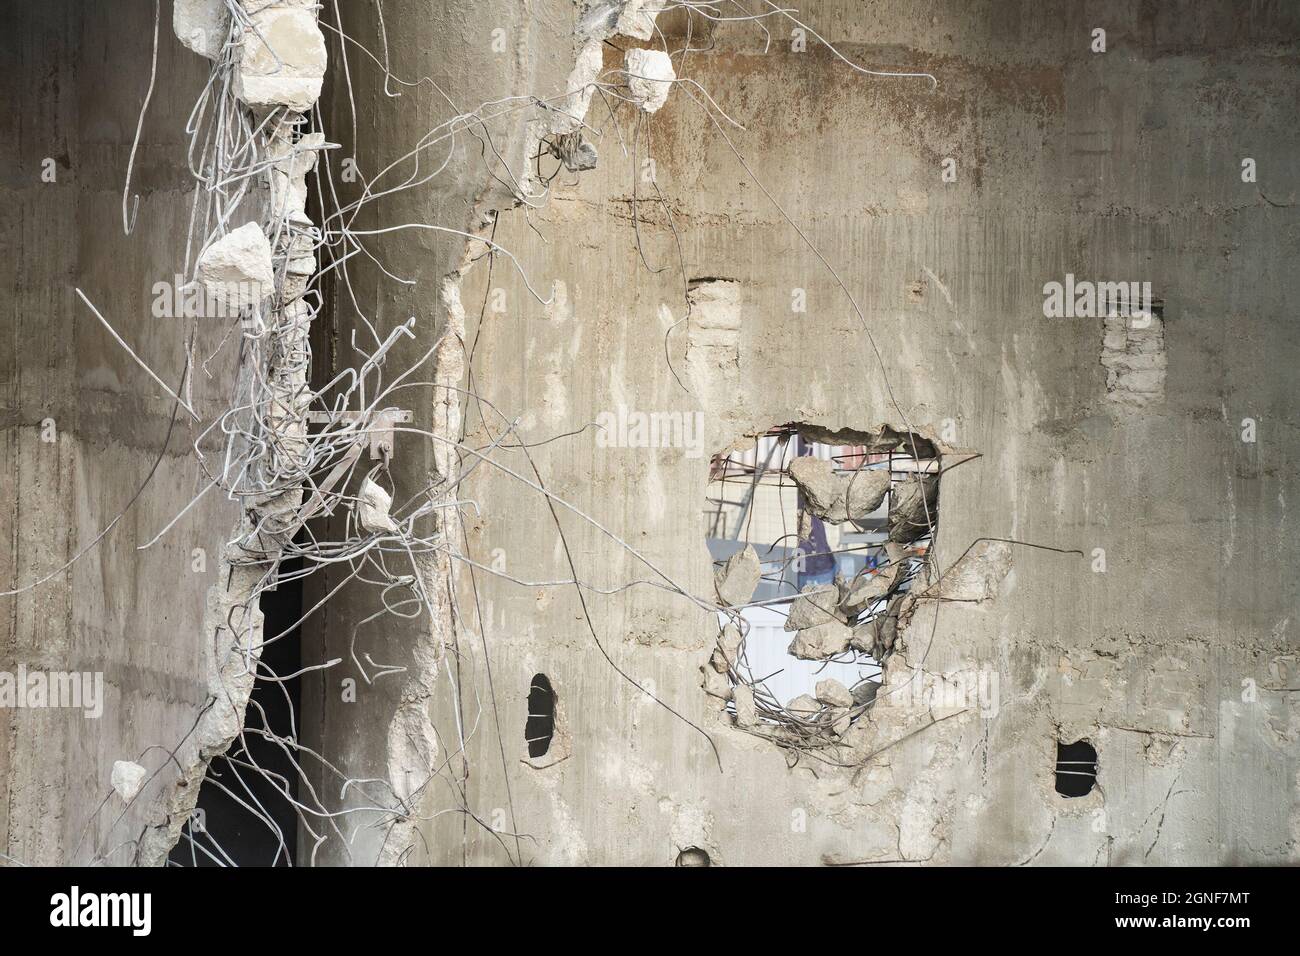 Una struttura in cemento armato parzialmente rovinato, con barre di rinforzo in acciaio storte che sporgono dalle pareti. Foto Stock